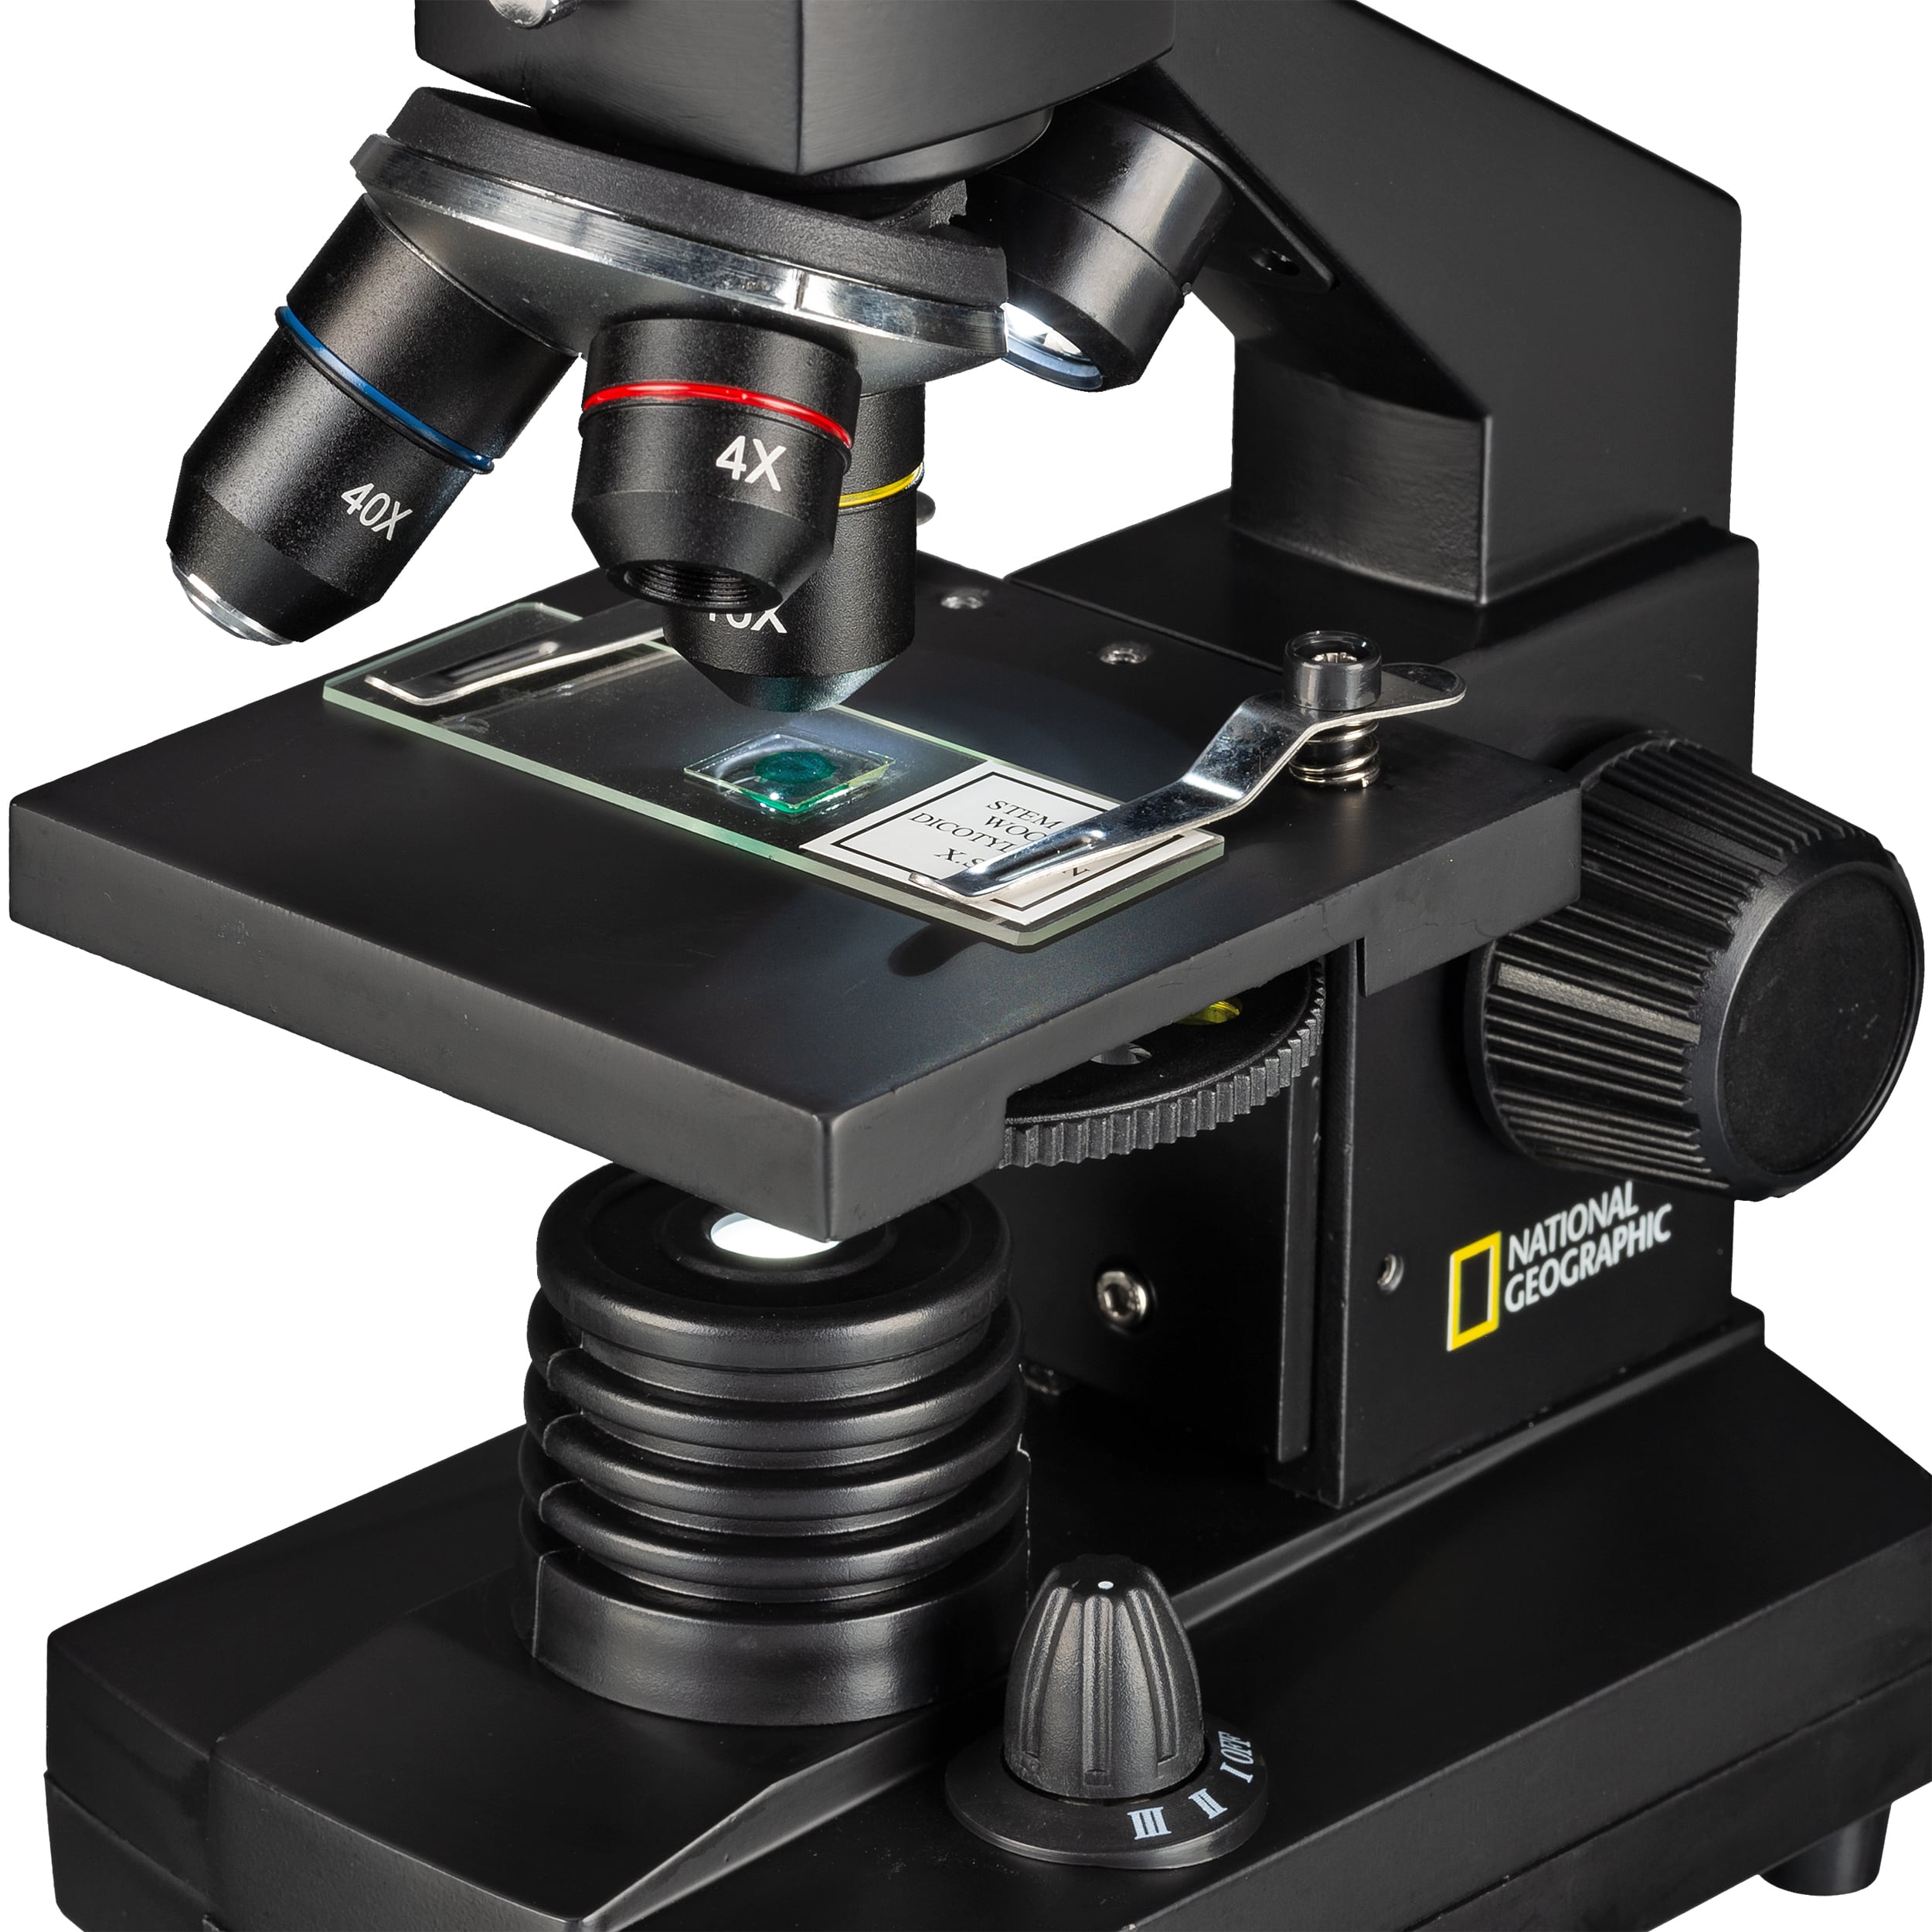   Il microscopio NATIONAL GEOGRAPHIC 40x-1024x offre un'ampia gamma di accessori per i principianti: valigetta da trasporto, oculare HD per il collegamento a un PC, ampio set per la preparazione e una selezione di preparati permanenti - basta aprirla e iniziare  